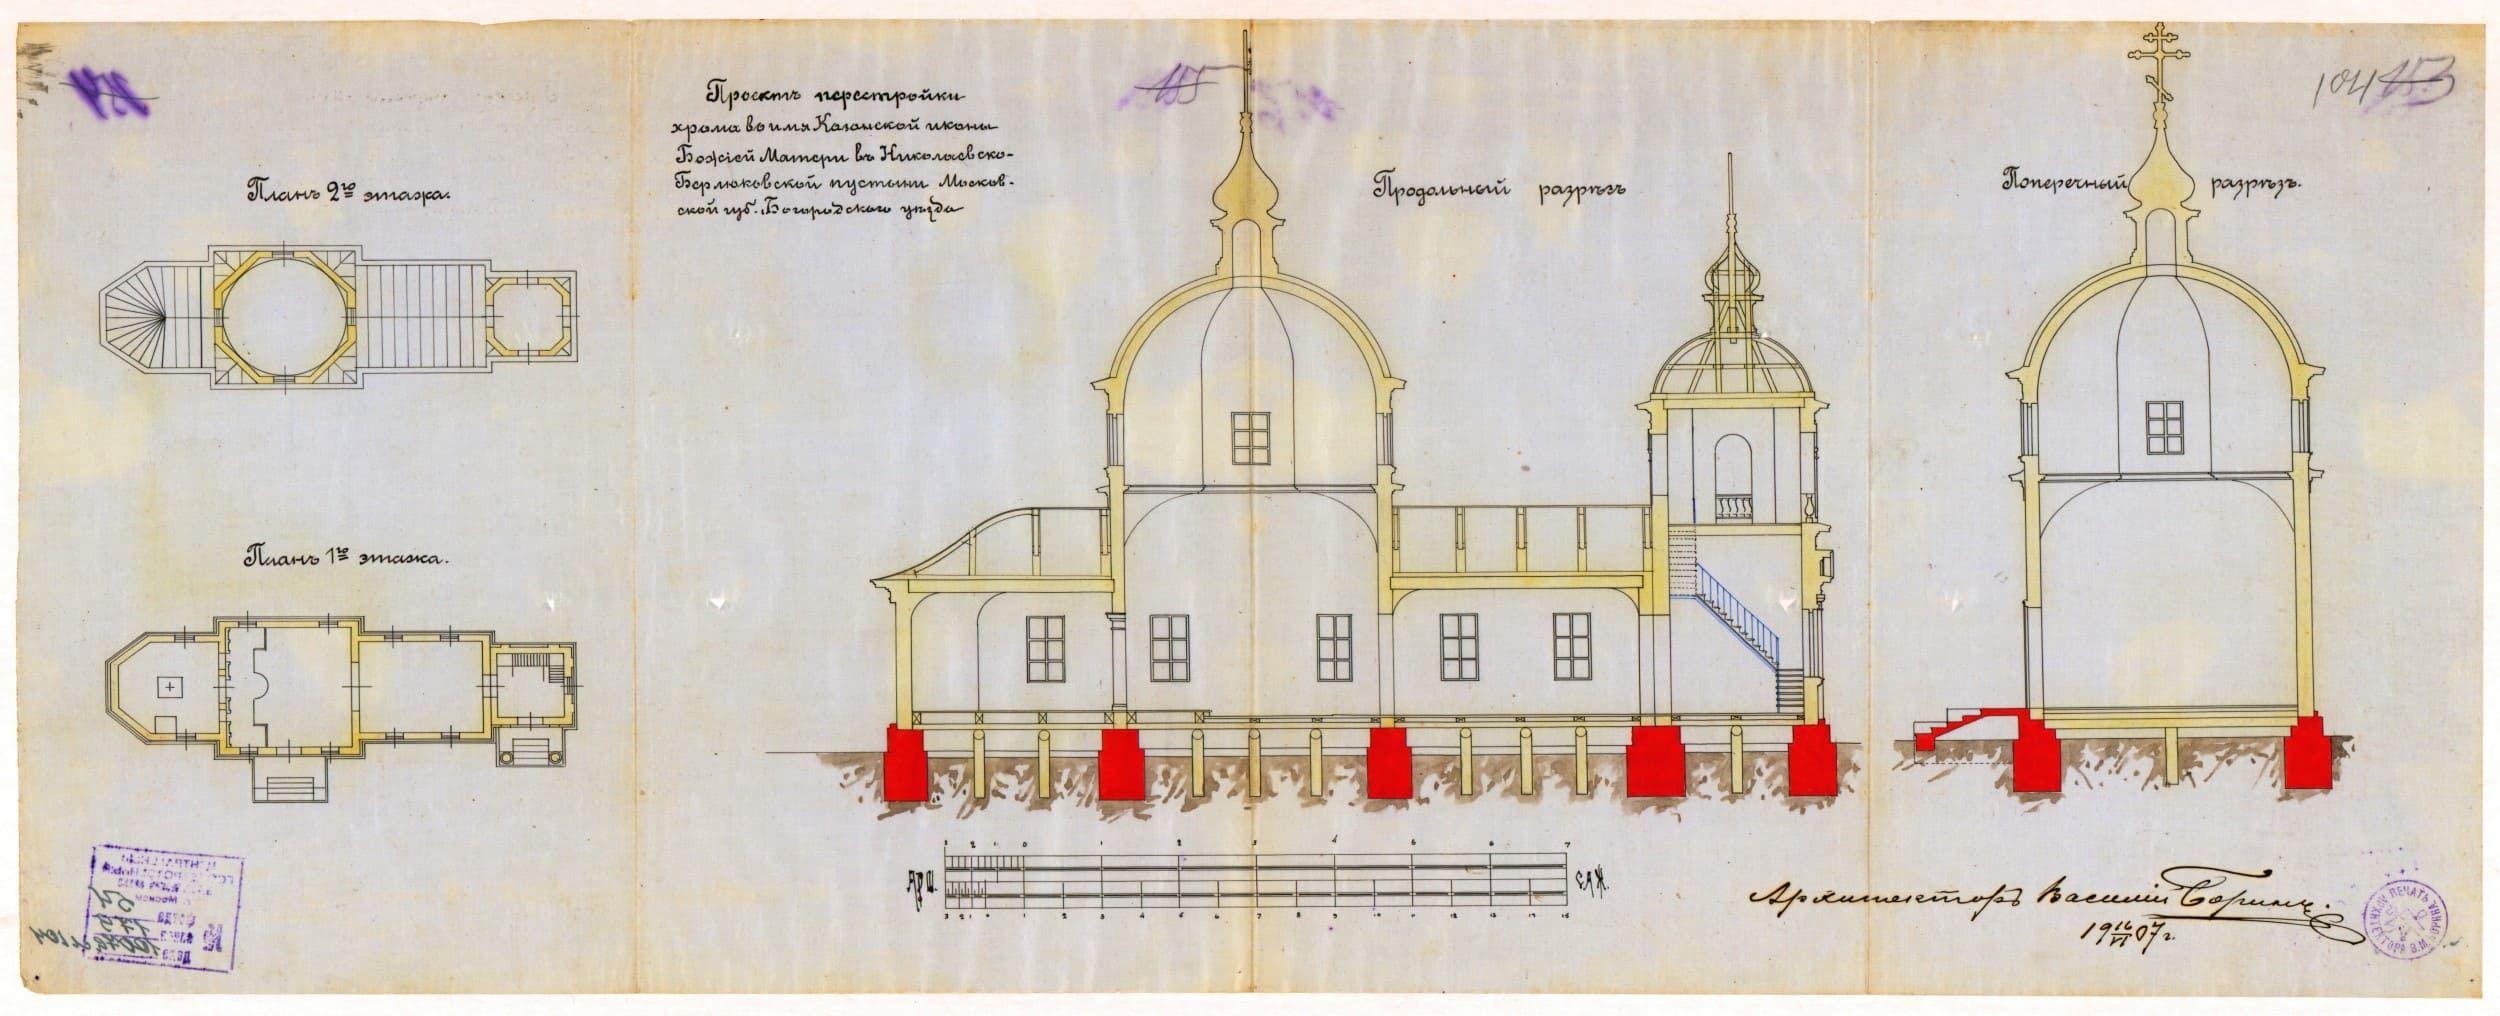 Поиск документов о монастырях, церквях и храмах